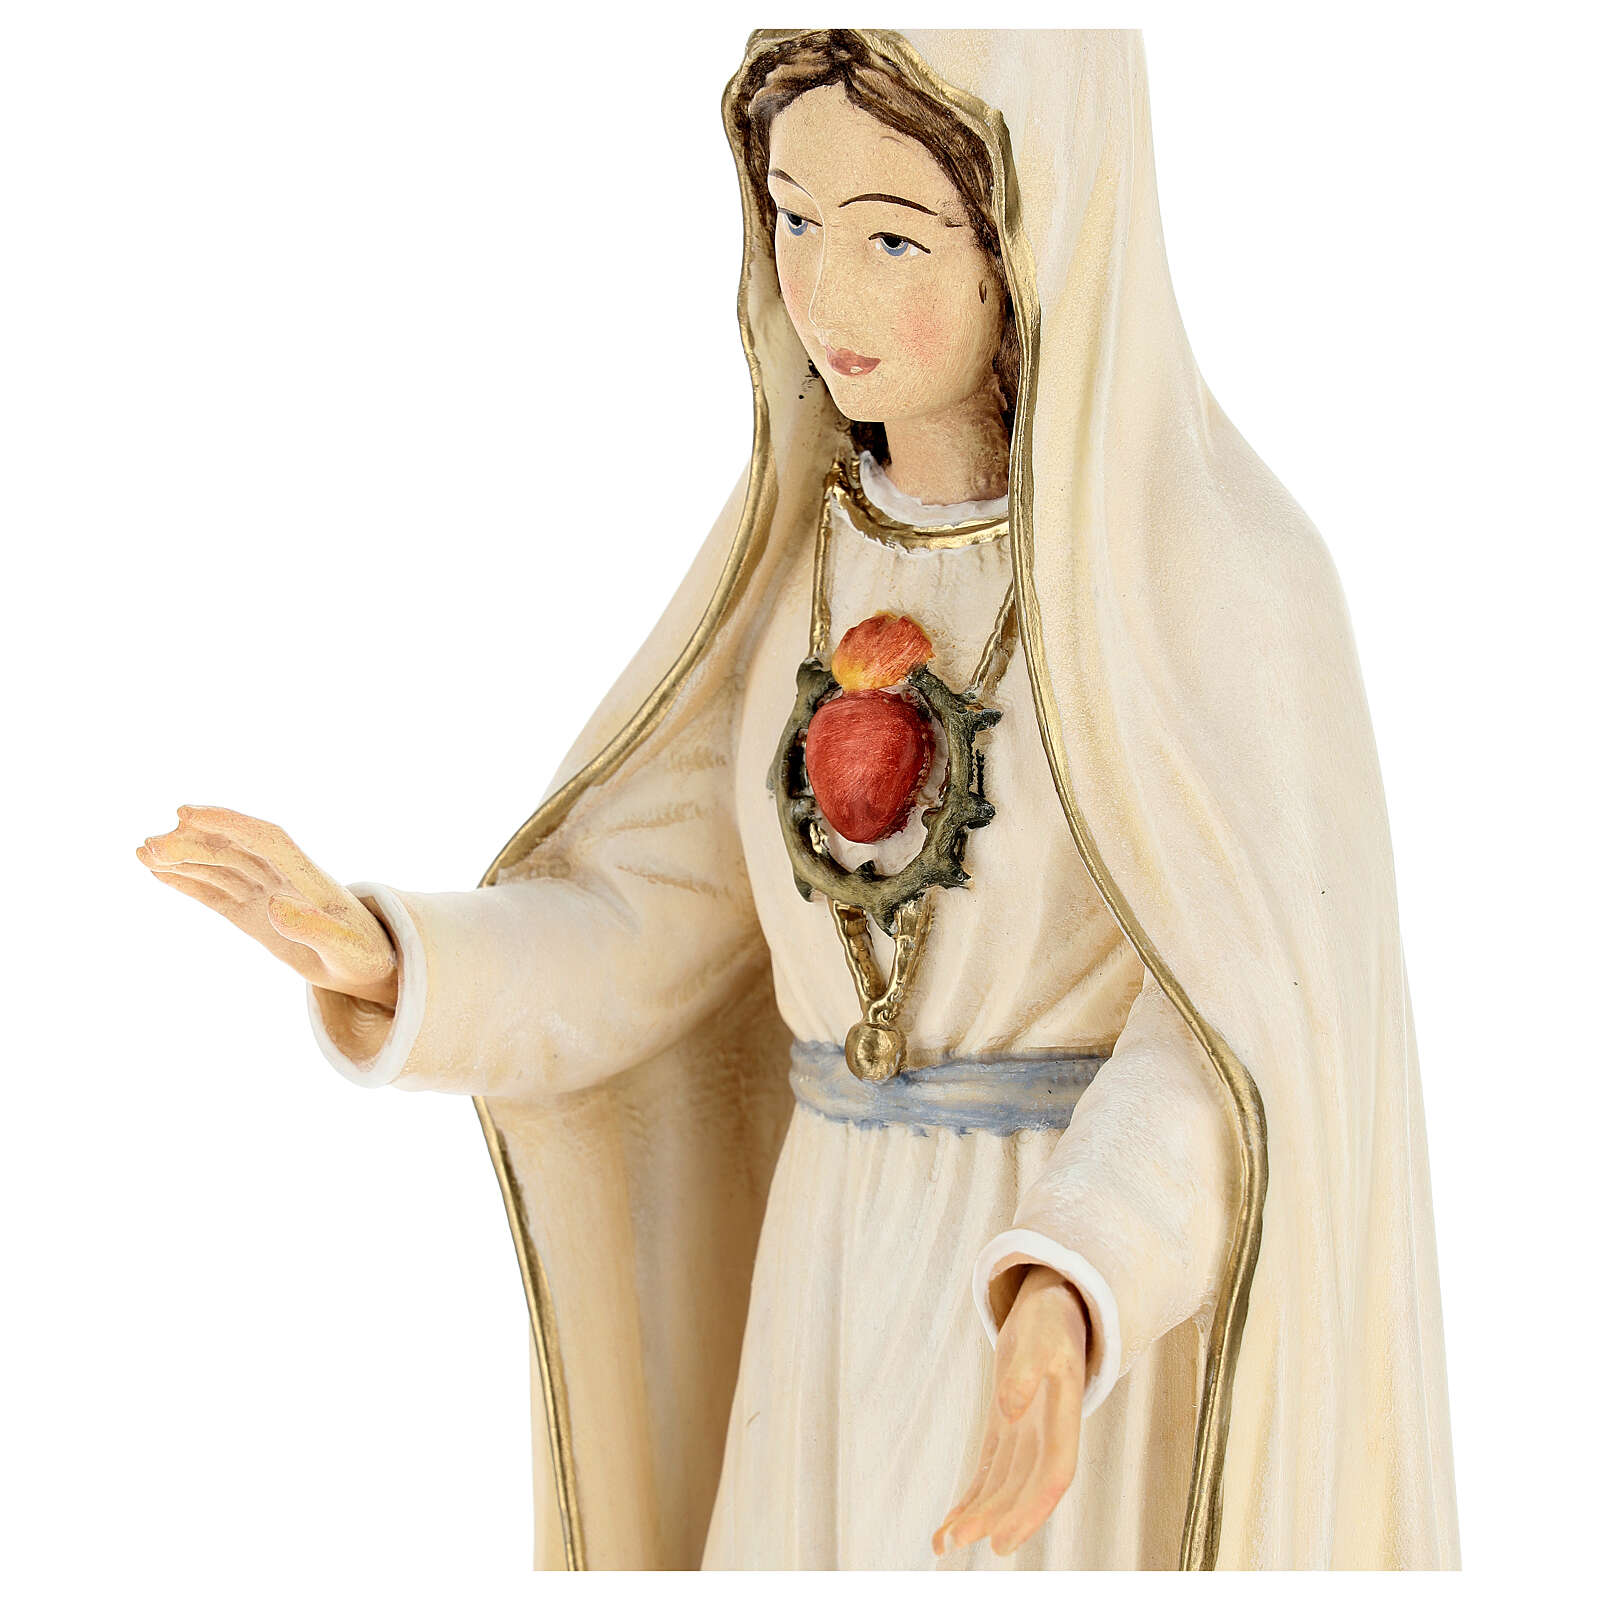 Madonna di Fatima 5. Apparizione legno Valgardena dipinta